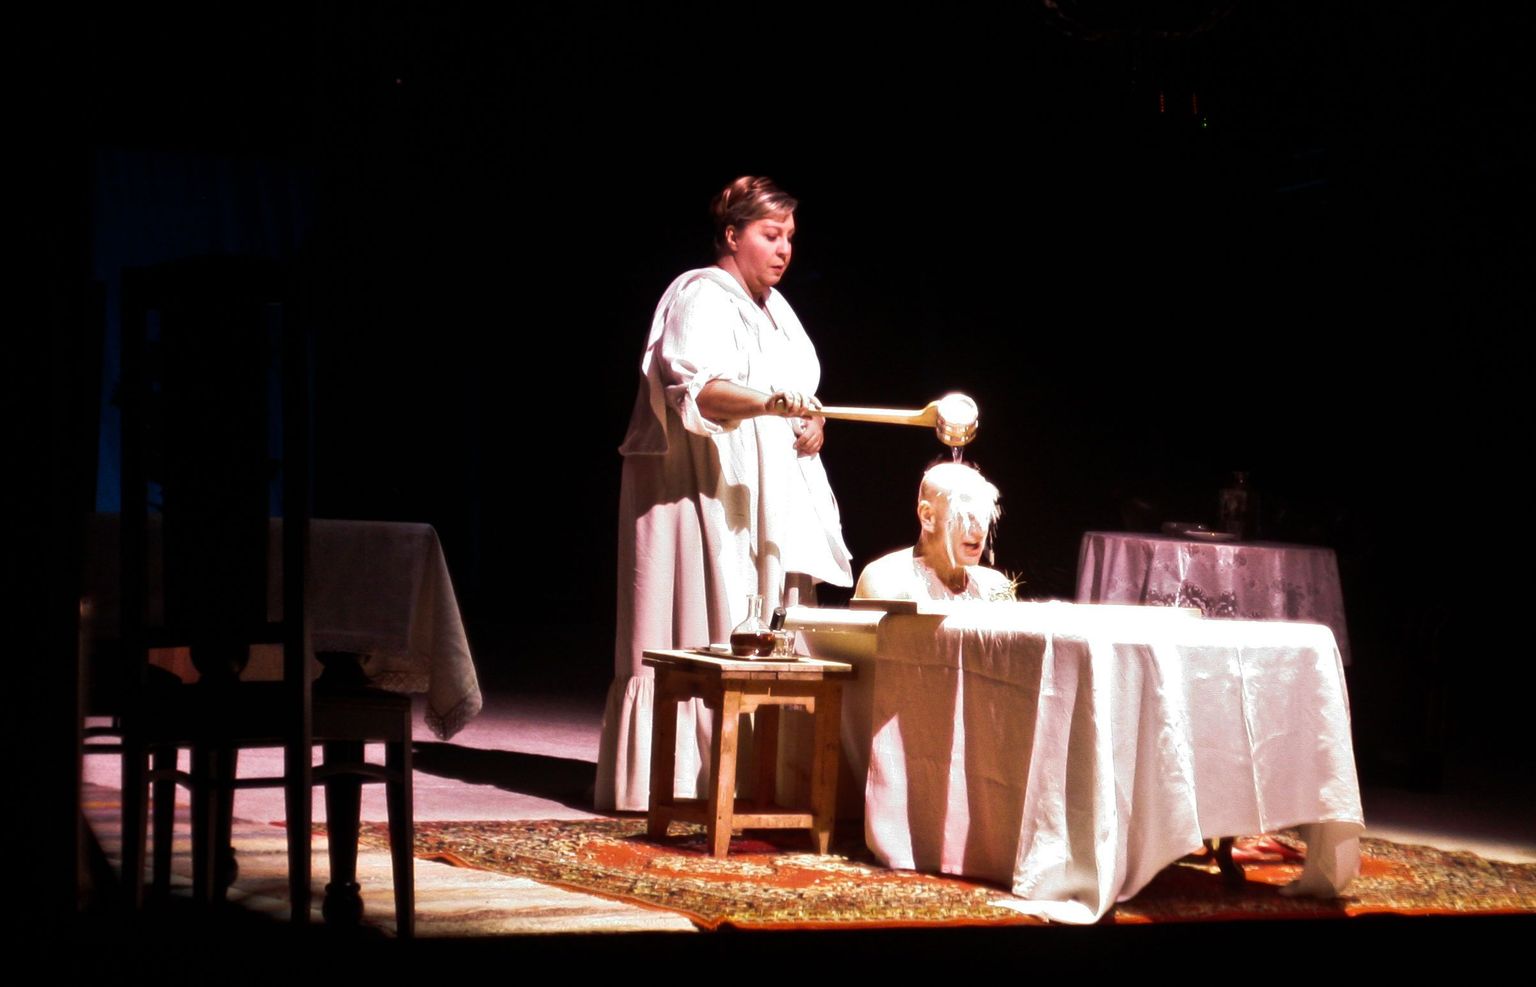 Васса (Марина Голуб) своему мужу: «Растлитель, выпей яду!» Сцена из спектакля «Васса Железнова» режиссера Льва Эренбурга.